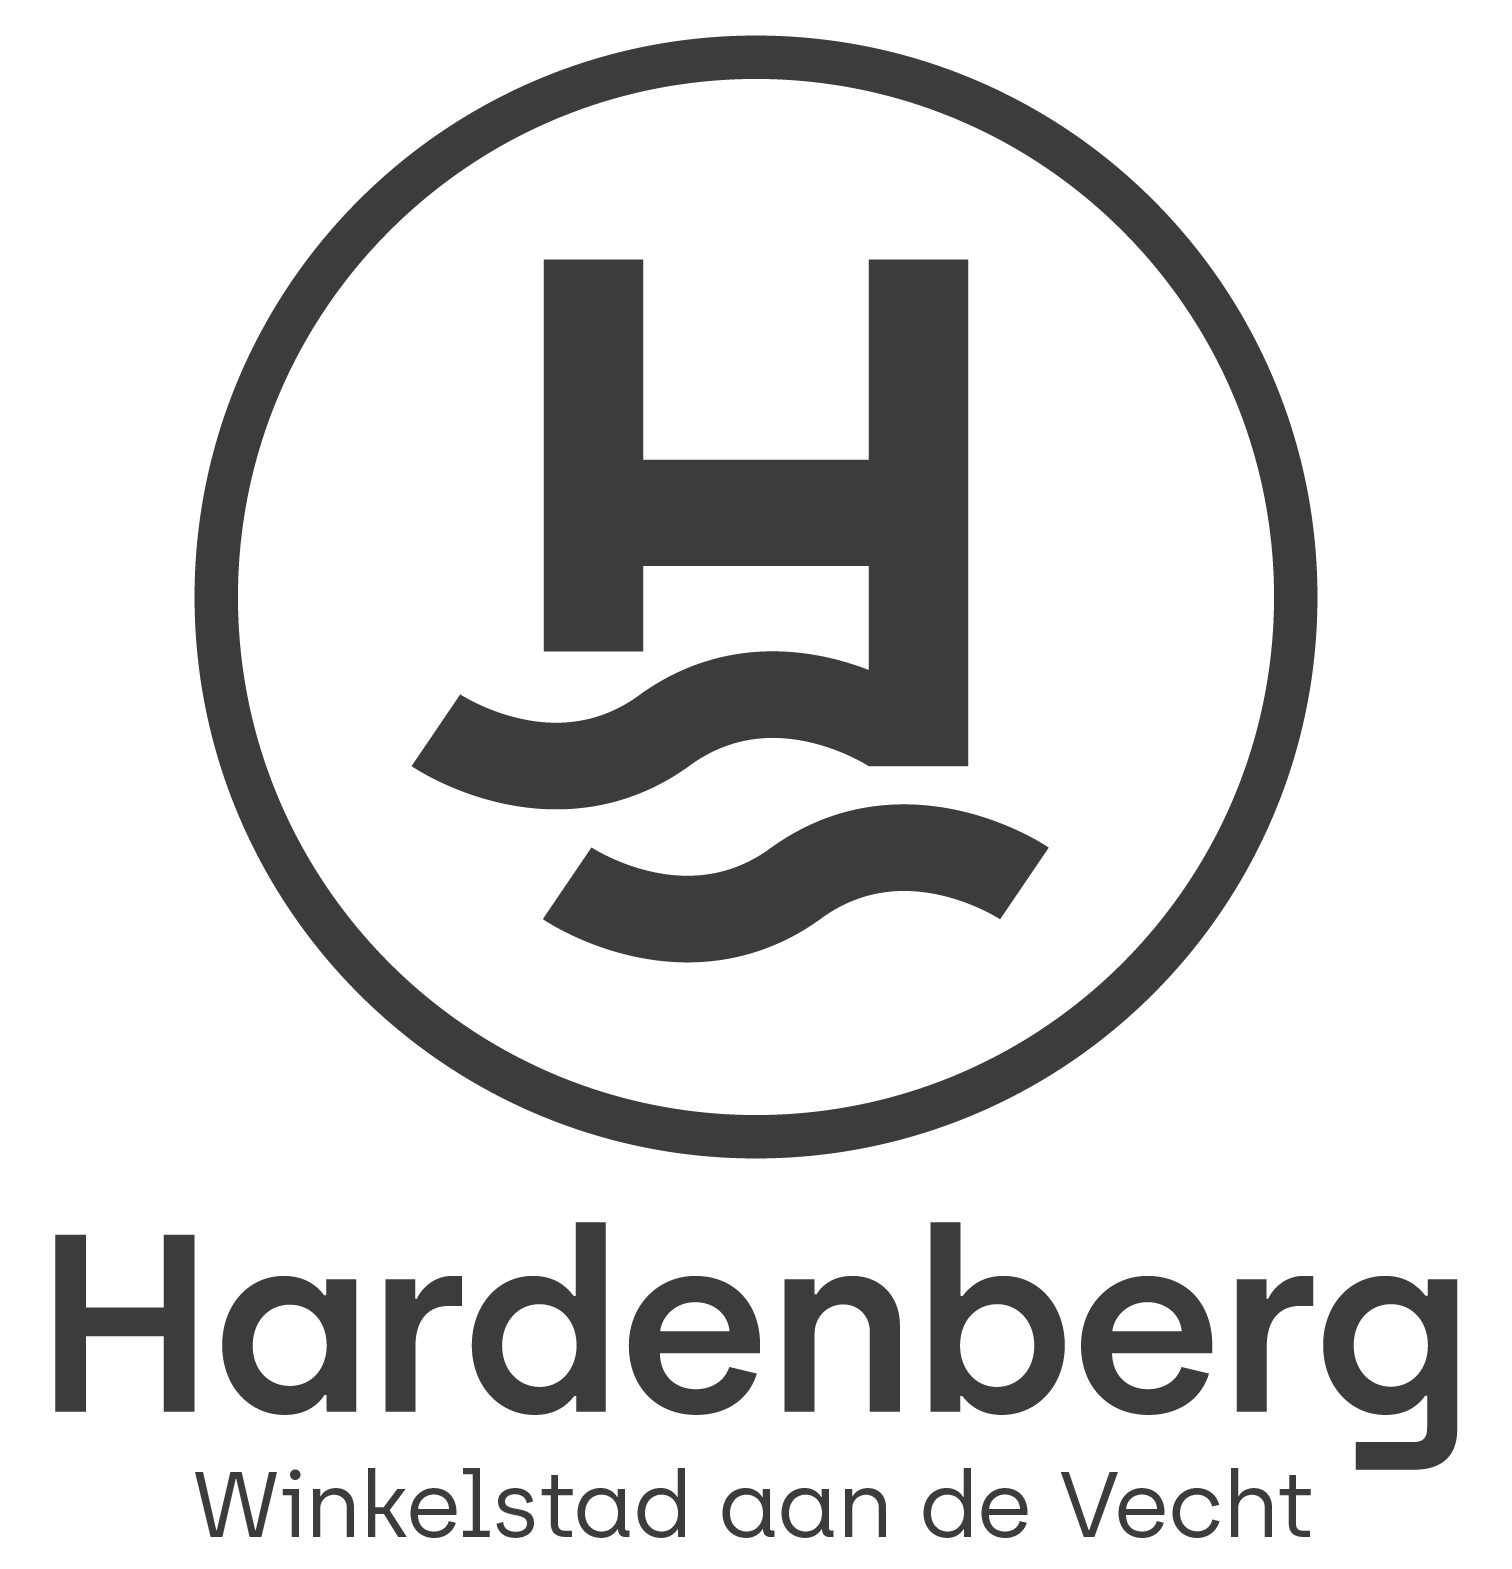 EK PRIJZENFESTIVAL van 10 juni t/m 10 juli - Winkelstad Hardenberg